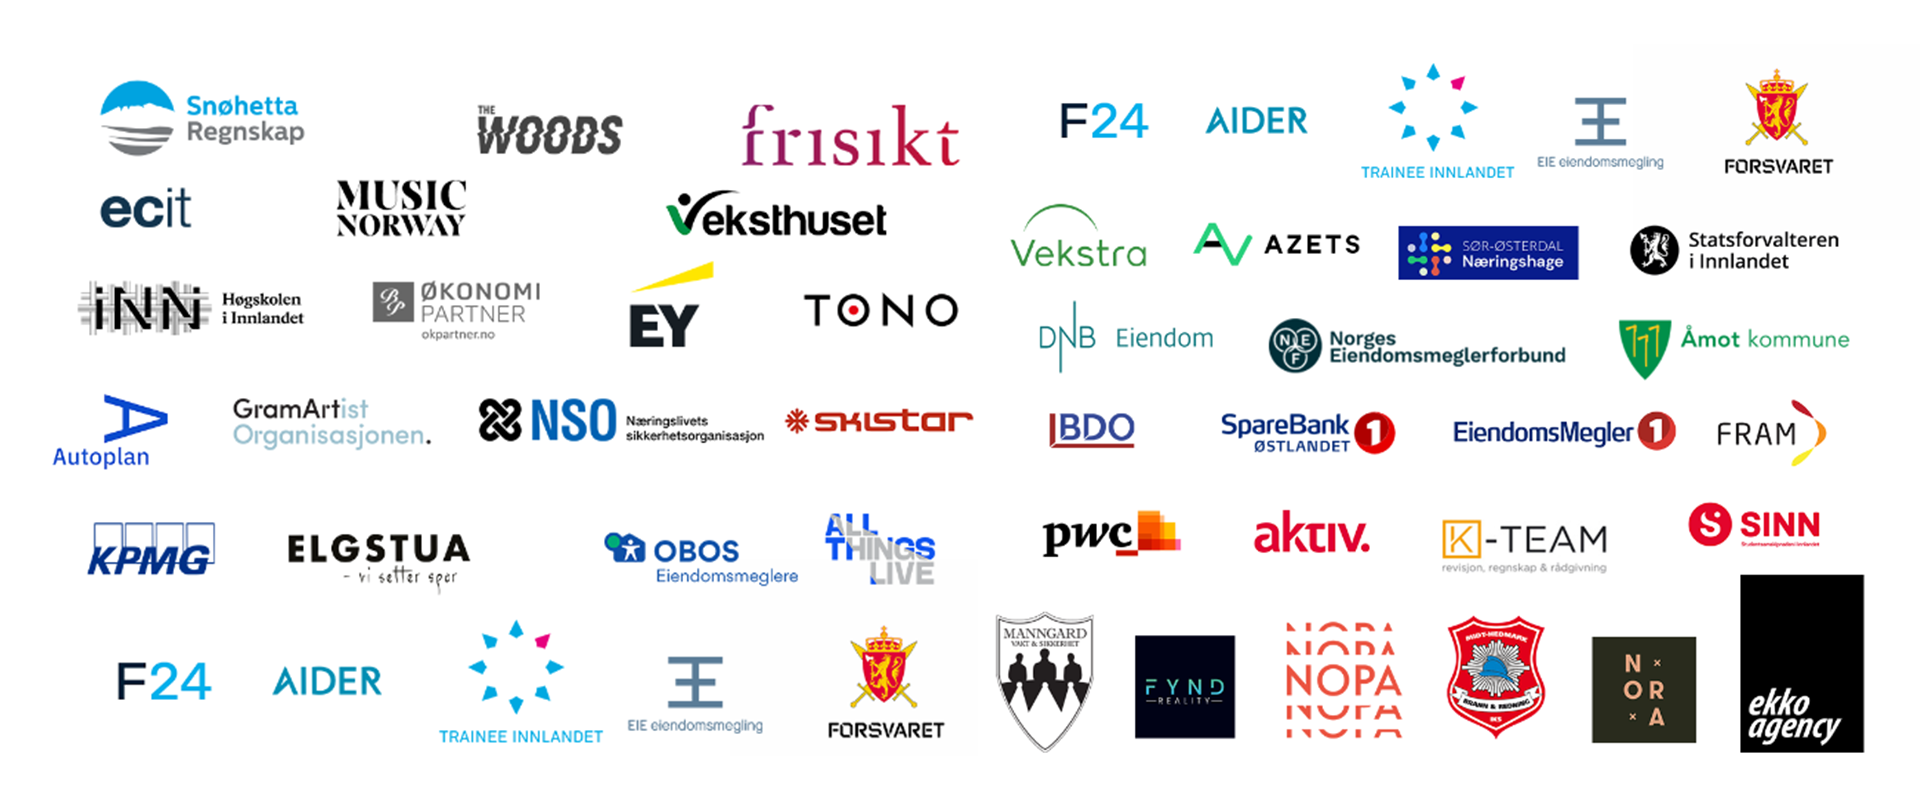 Logoer av alle bedriftene som var tilstede på karrieredagen